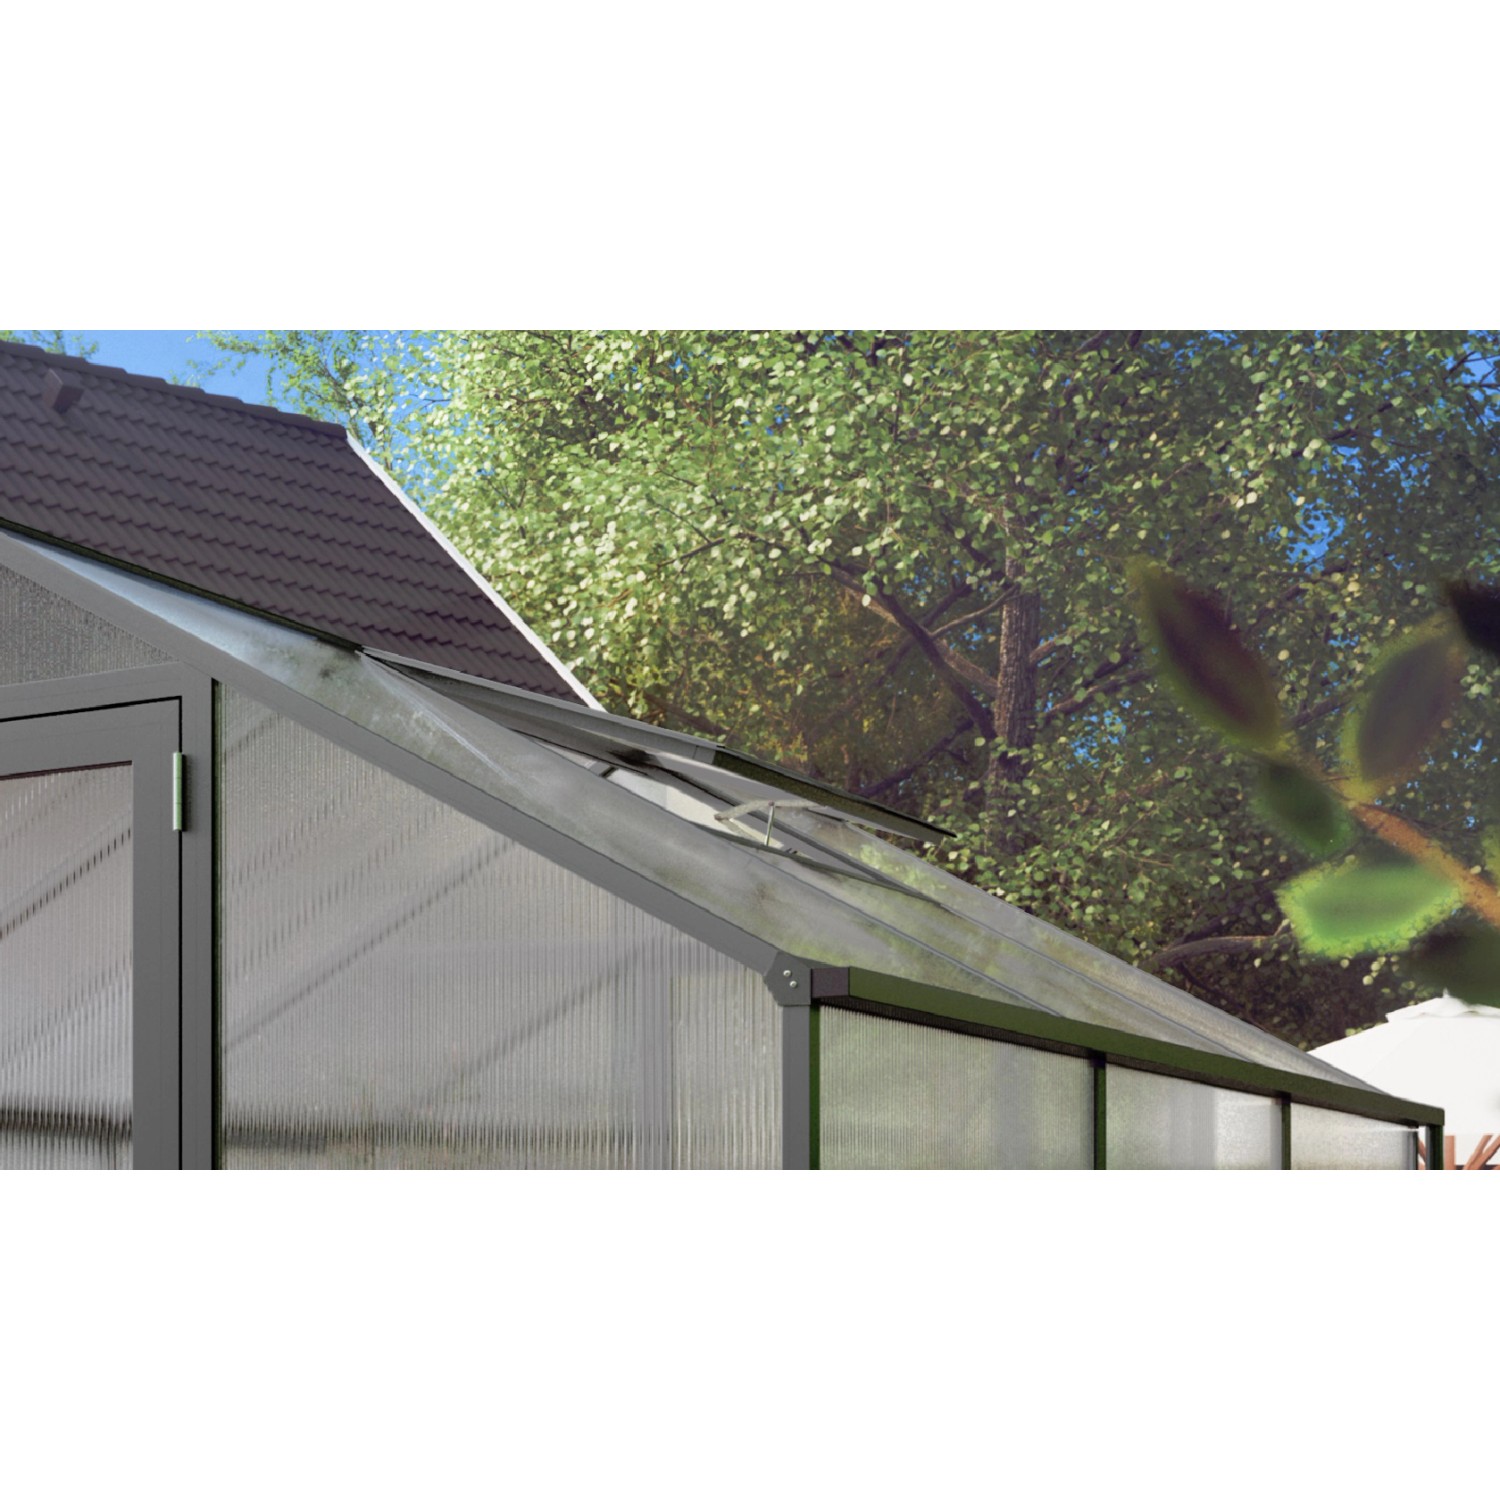 KGT zusätzliches Dachfenster für Gewächshaus Rose/Orchidee/Lilie, Anthrazit-Grau